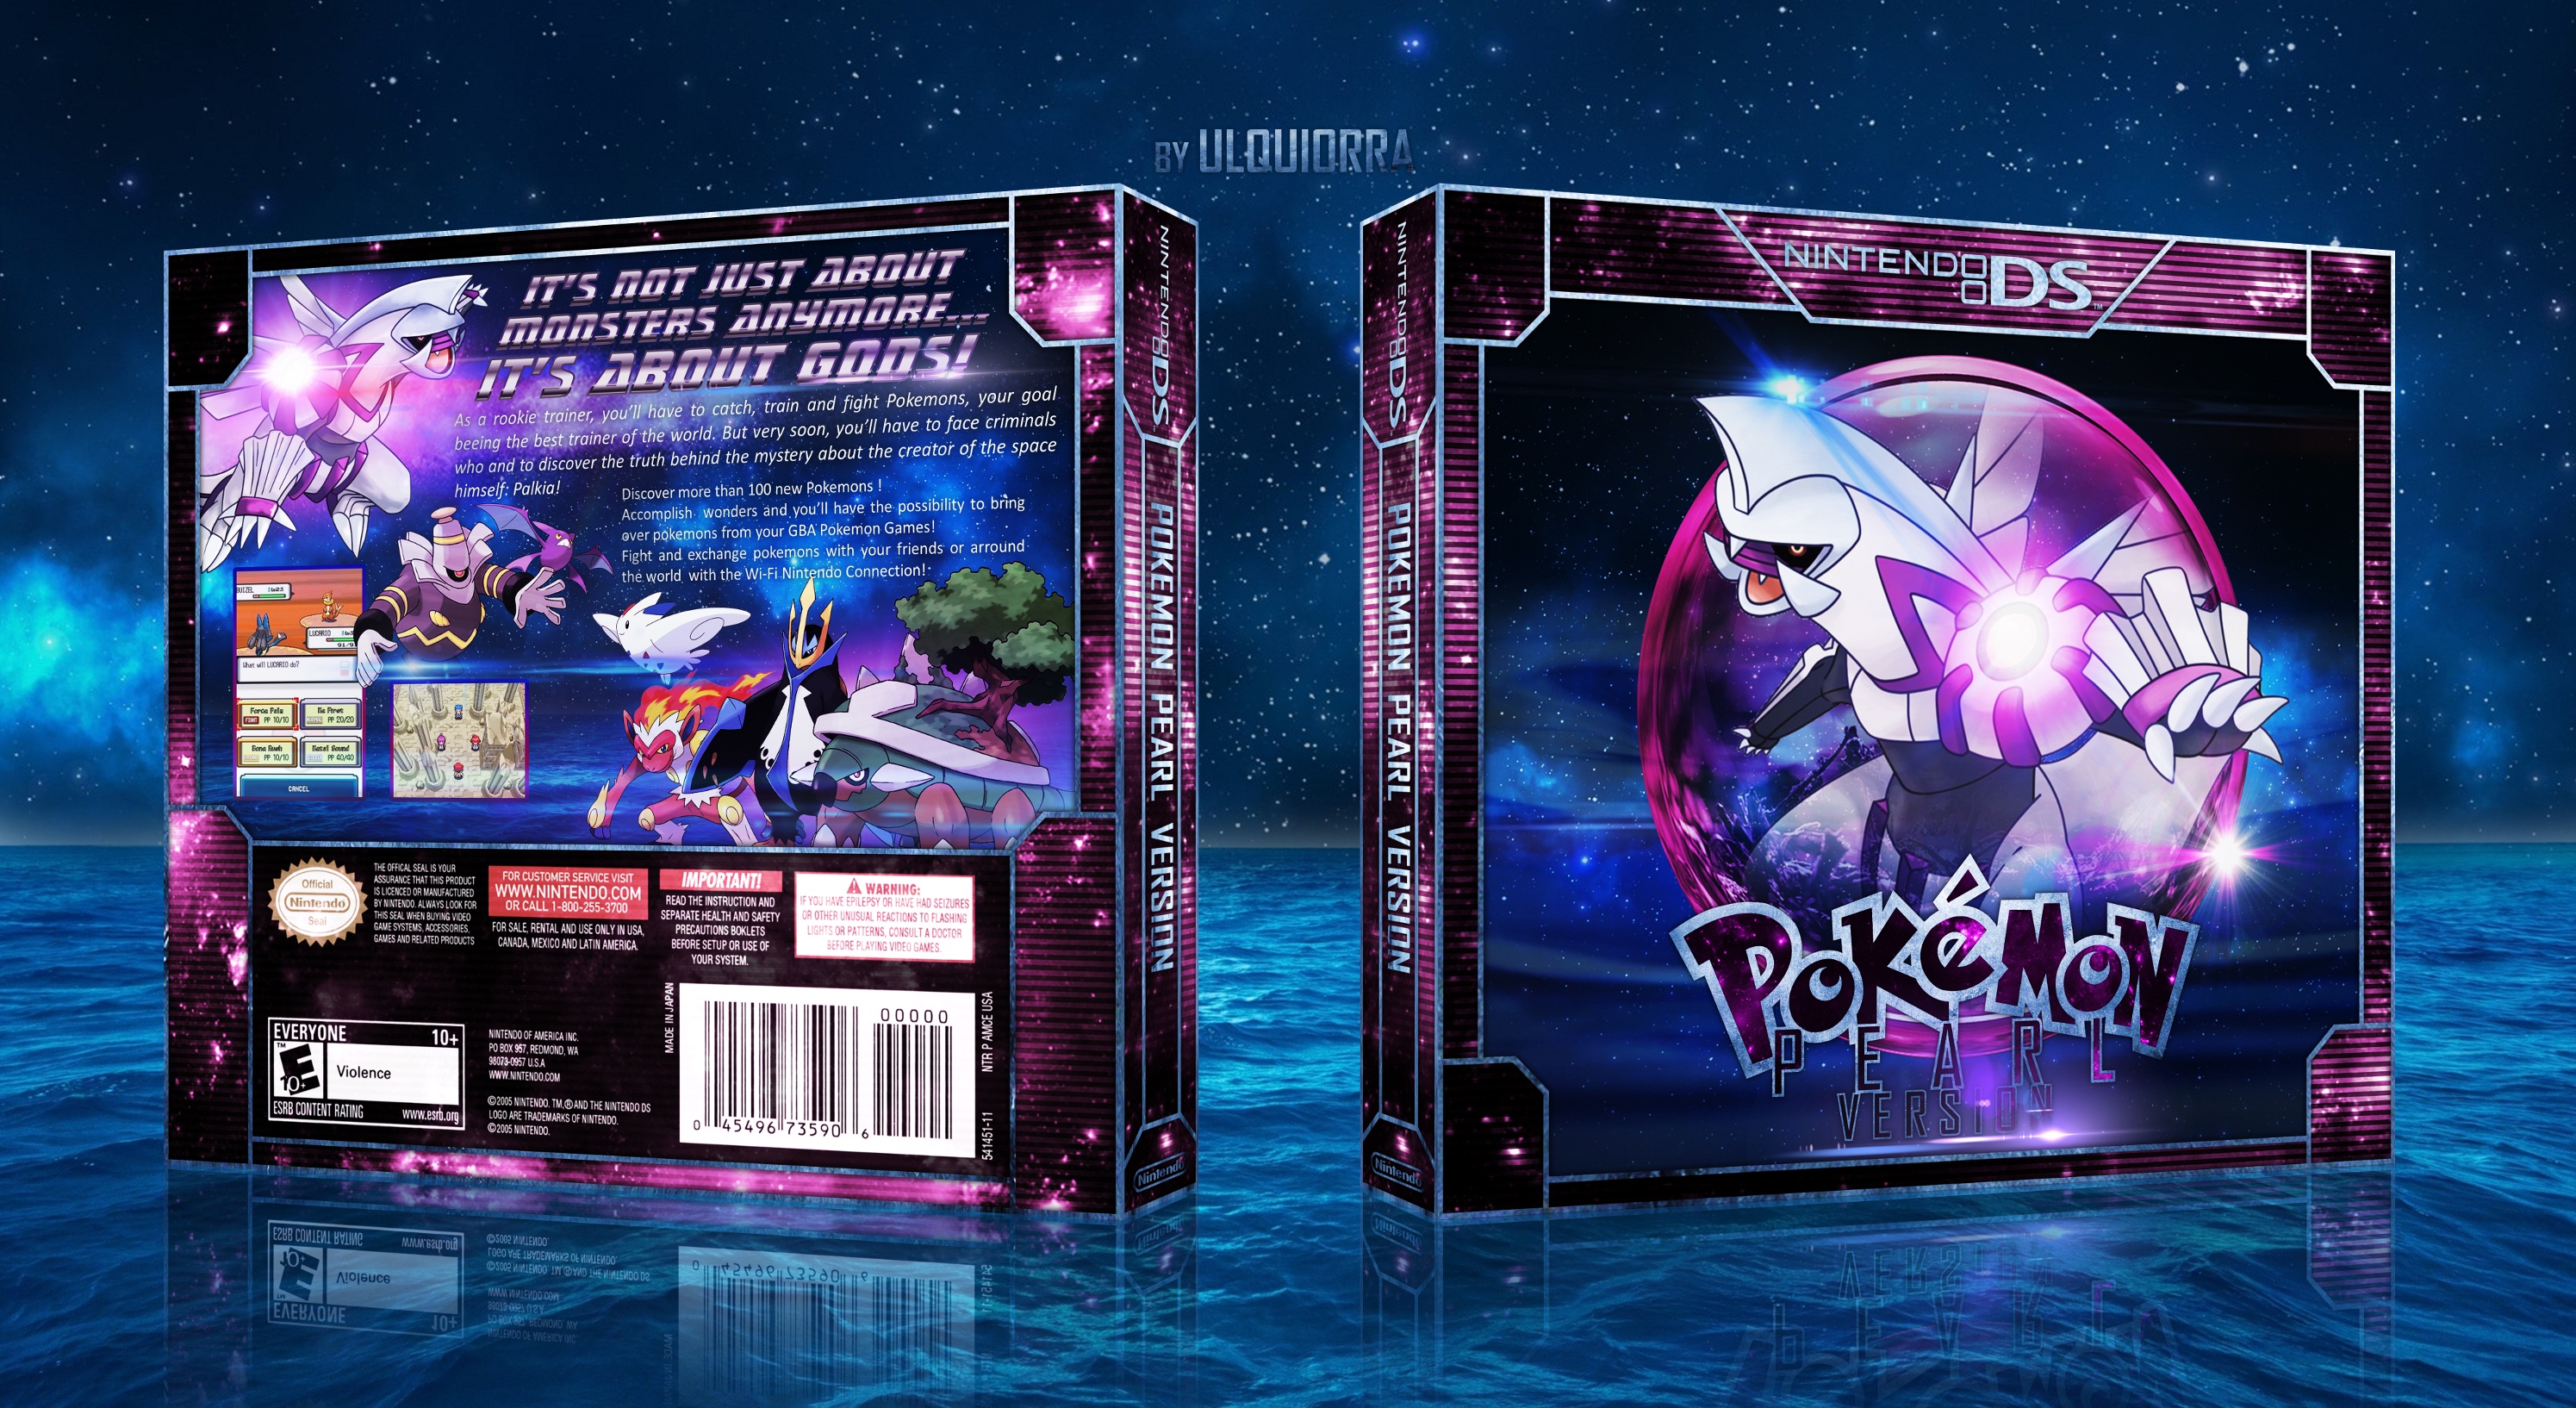 Pokemon Pearl Version box cover